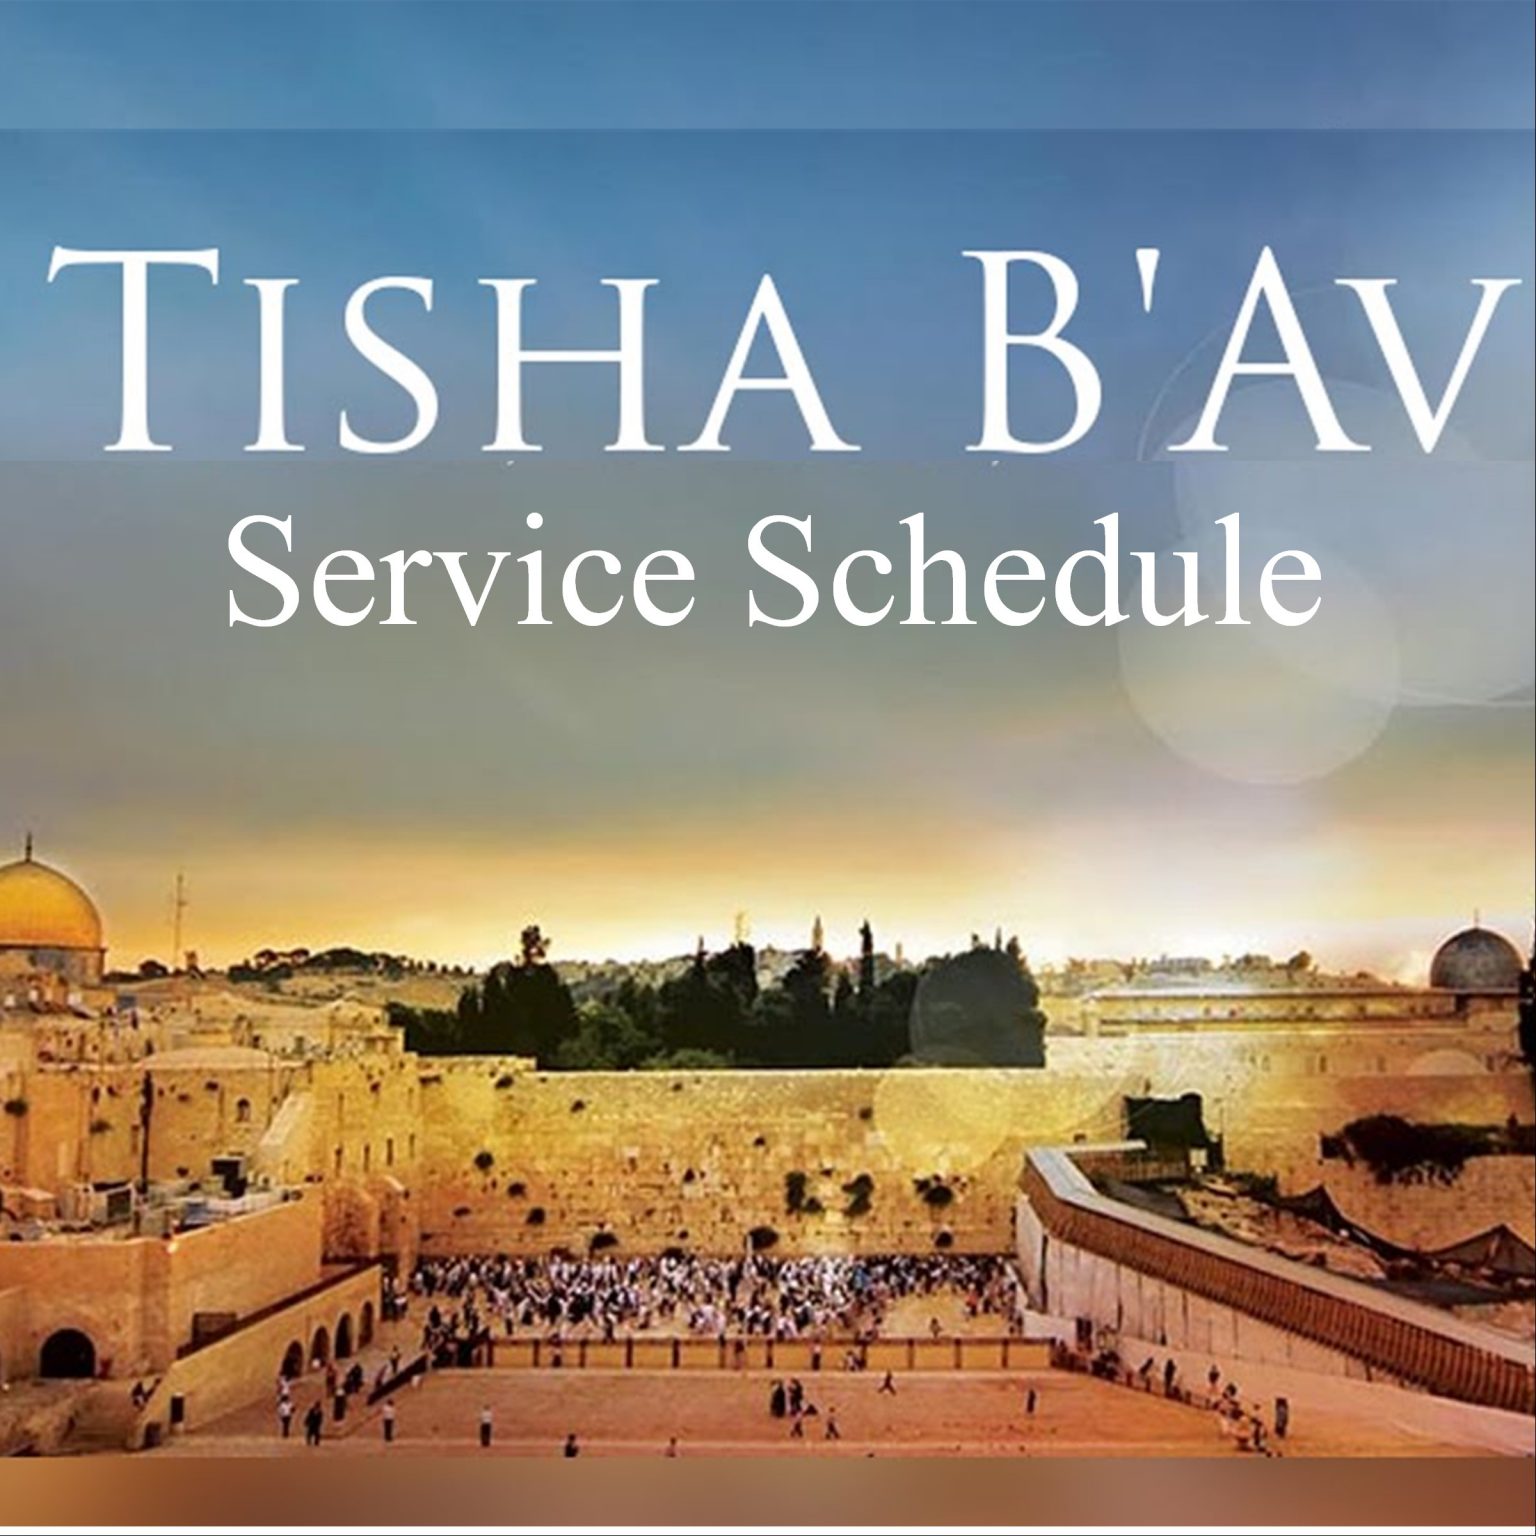 Tisha b’Av Temple Israel of Scranton